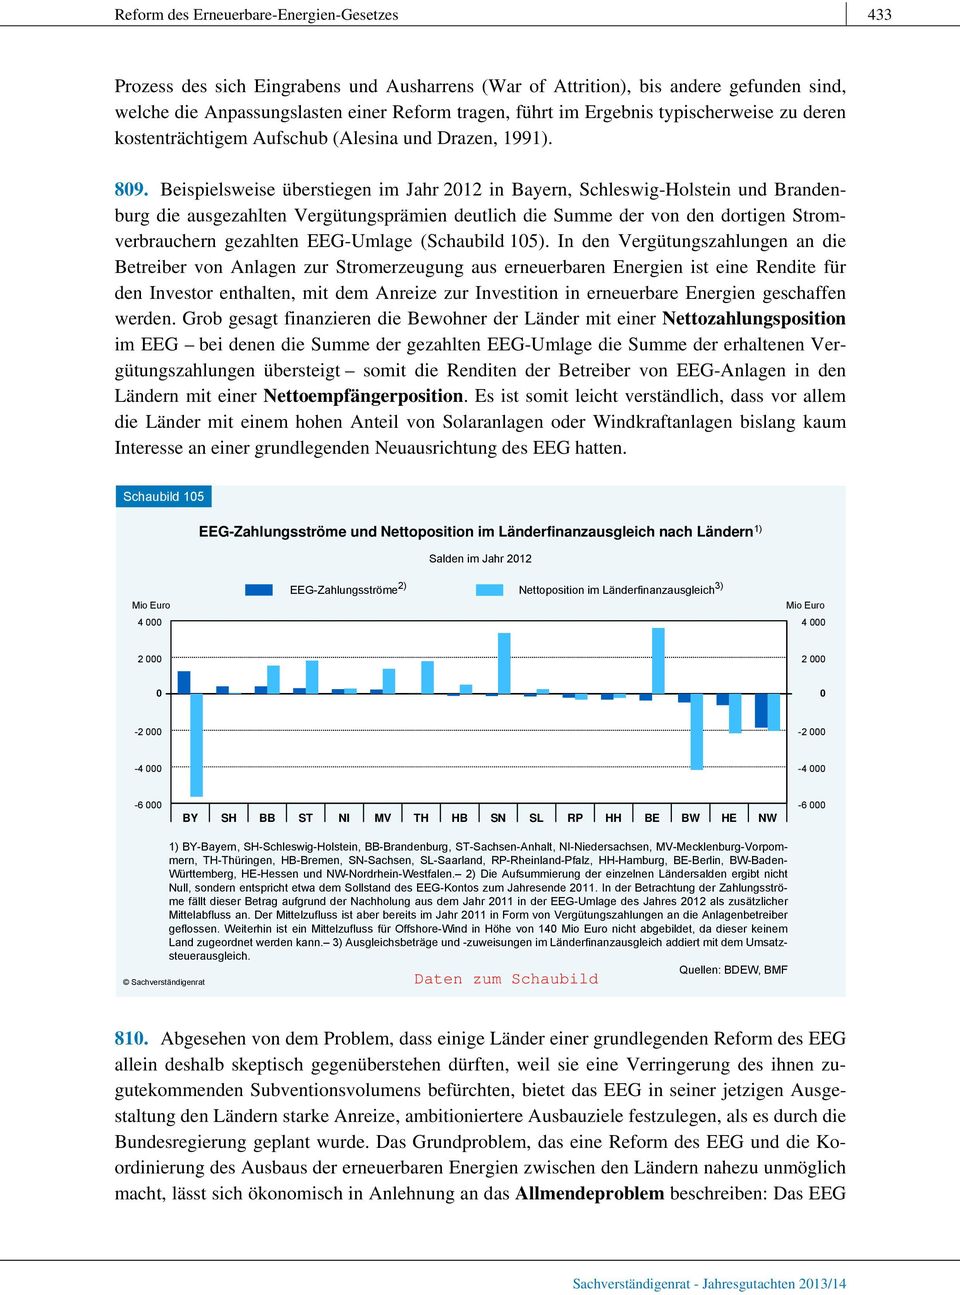 Beispielsweise überstiegen im Jahr 2012 in Bayern, Schleswig-Holstein und Brandenburg die ausgezahlten Vergütungsprämien deutlich die Summe der von den dortigen Stromverbrauchern gezahlten EEG-Umlage